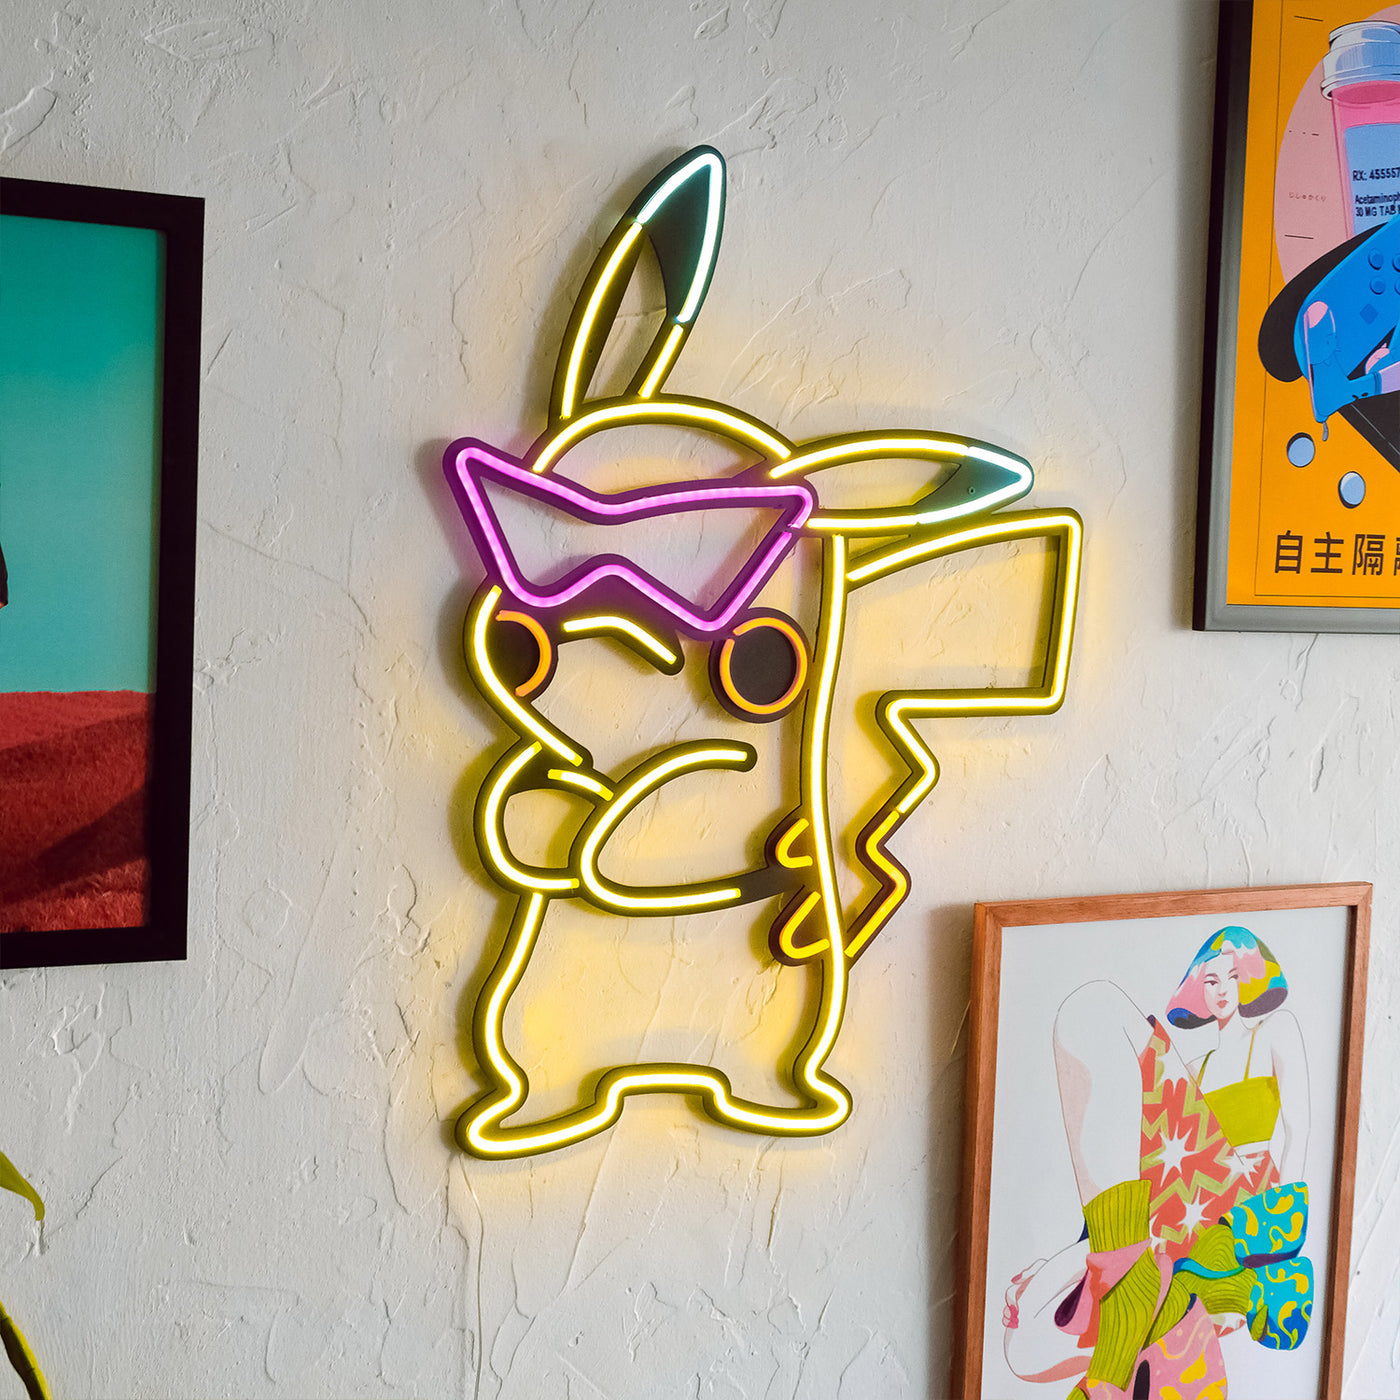 Art mural au néon inspiré de Pikachu 